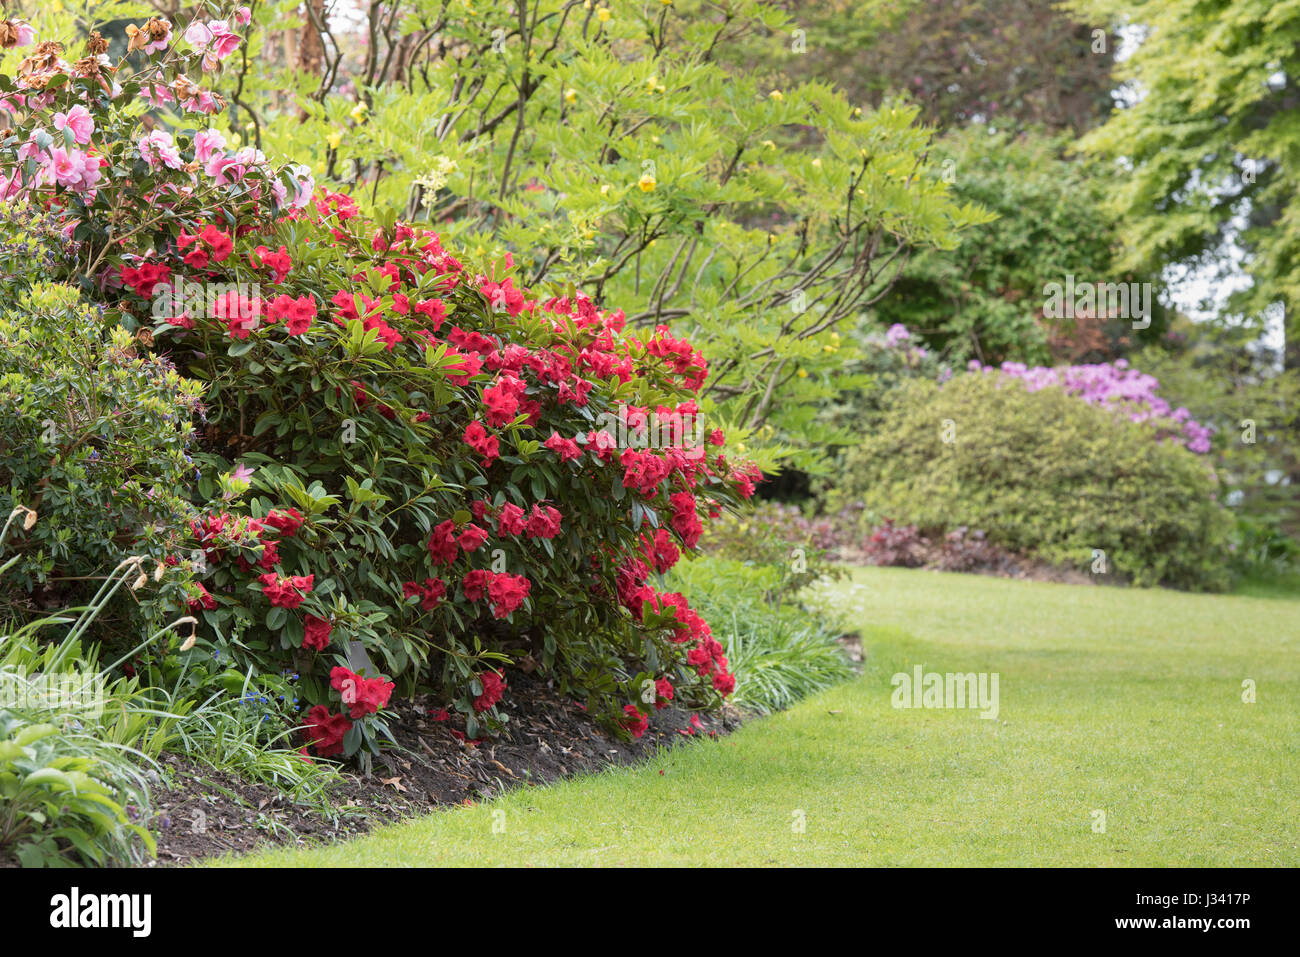 Rhododendron Elizabeth. Flowering Azalea at RHS Wisley Gardens, Surrey, England Stock Photo